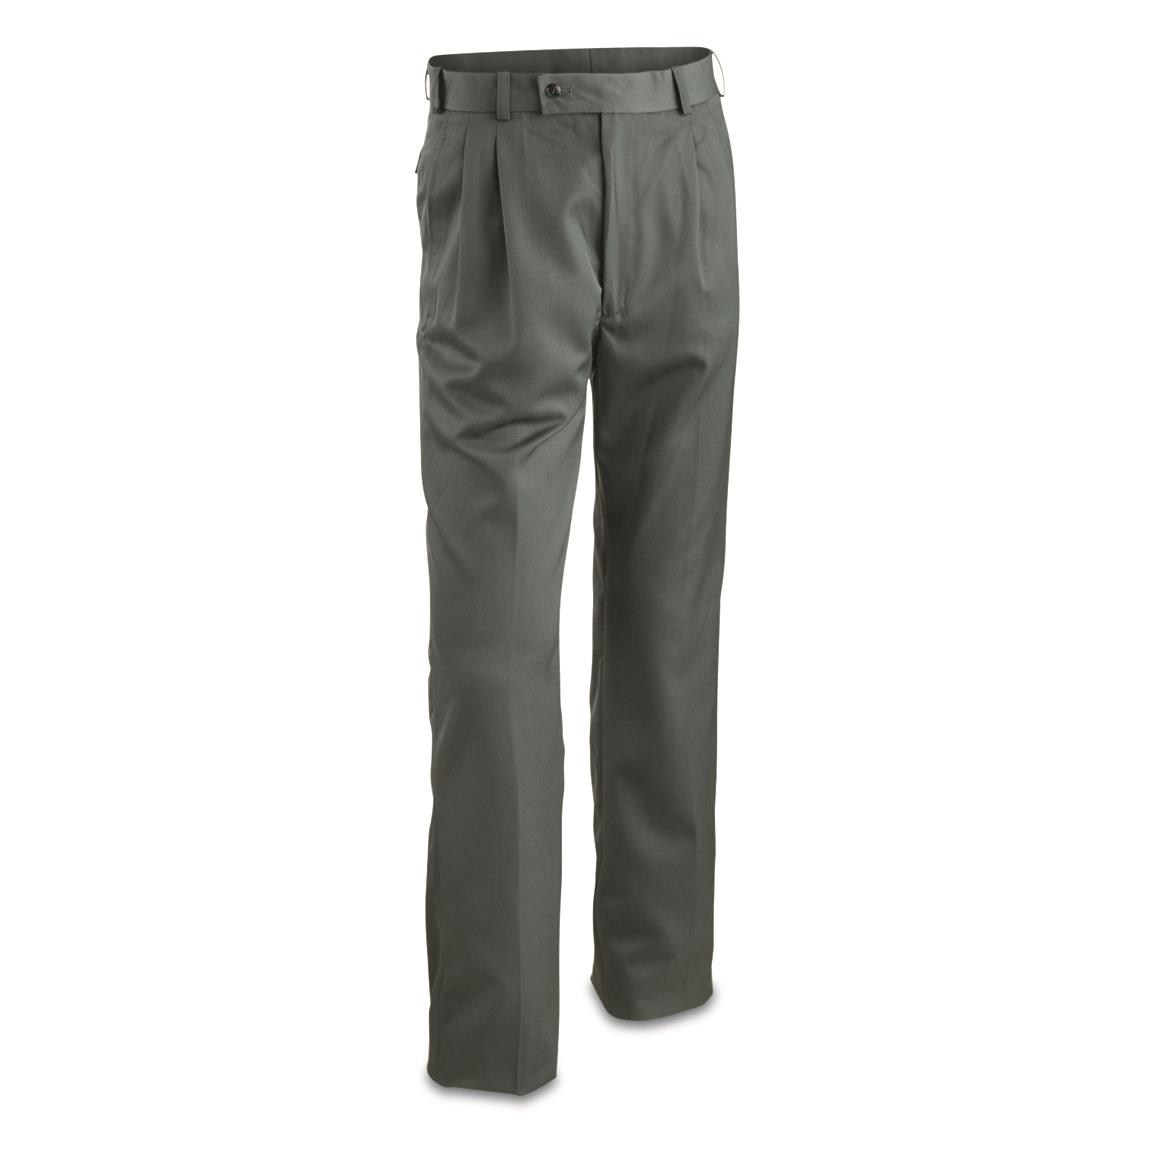 Belgian Military Surplus Wool Blend Pants, 2 Pack, Used, Gray Green